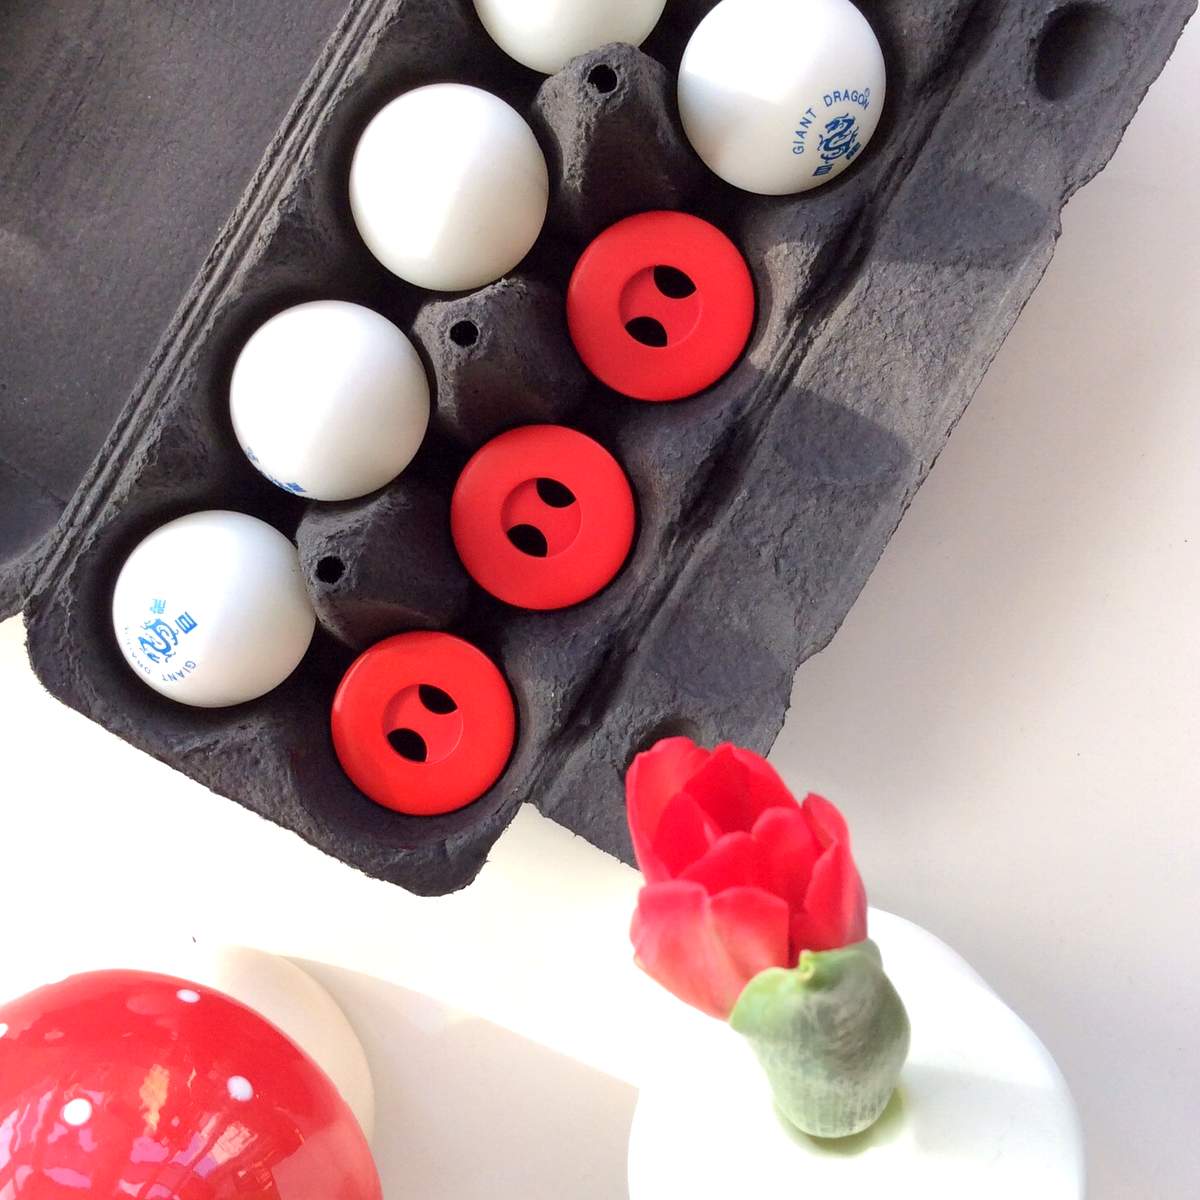 Knopfkiste - großer roter Knopf aus Kunststoff im Eierkarton mit Tulpe und Fliegenpilz